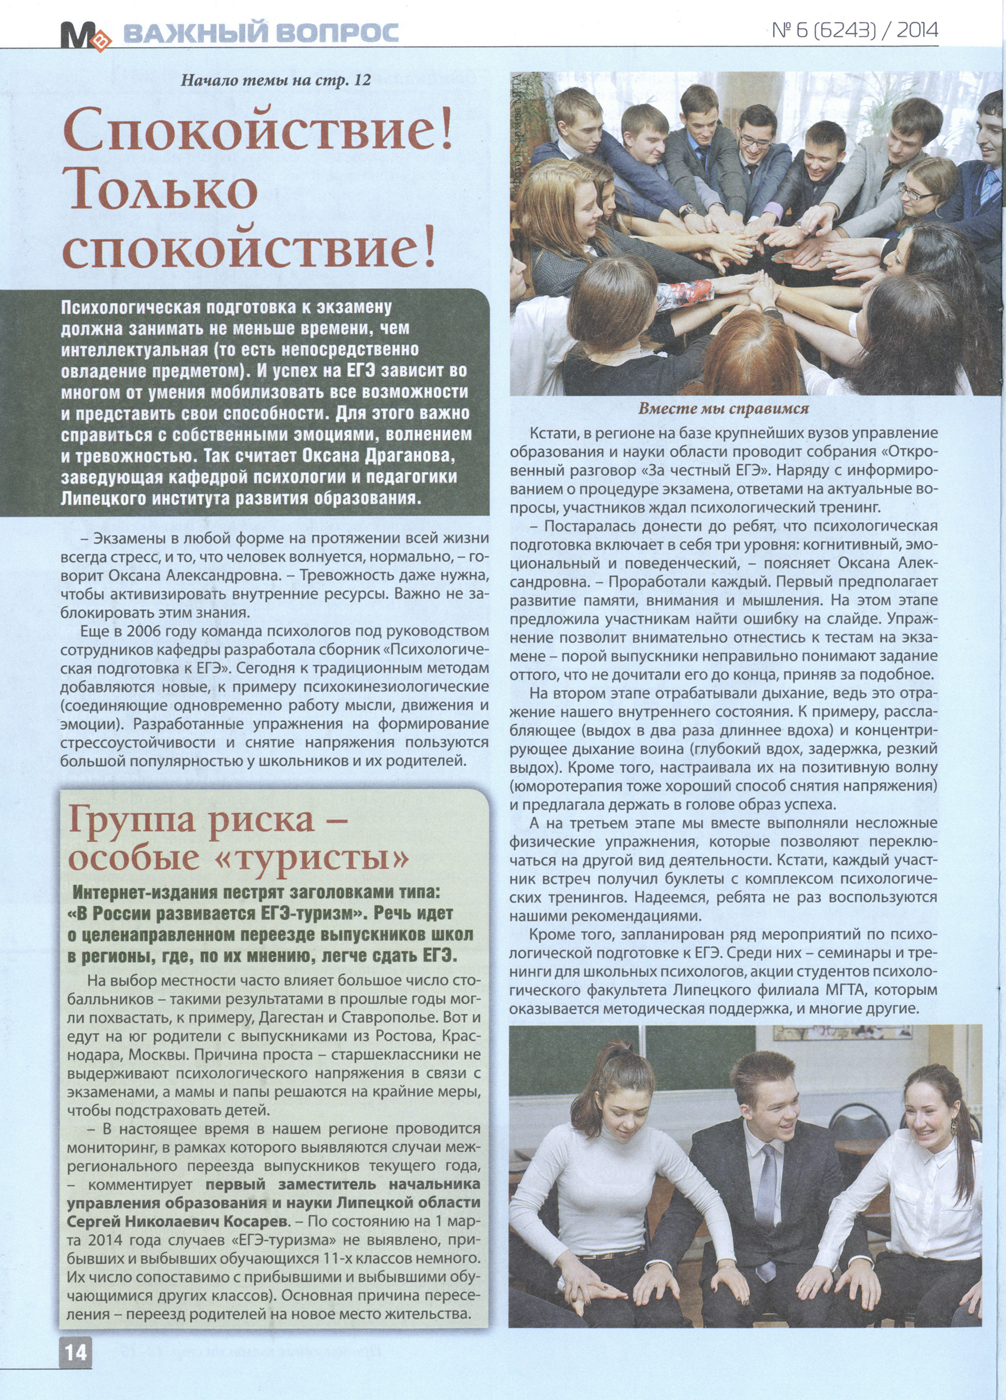 Молодёжный вестник (21.03.2014)_Страница_3